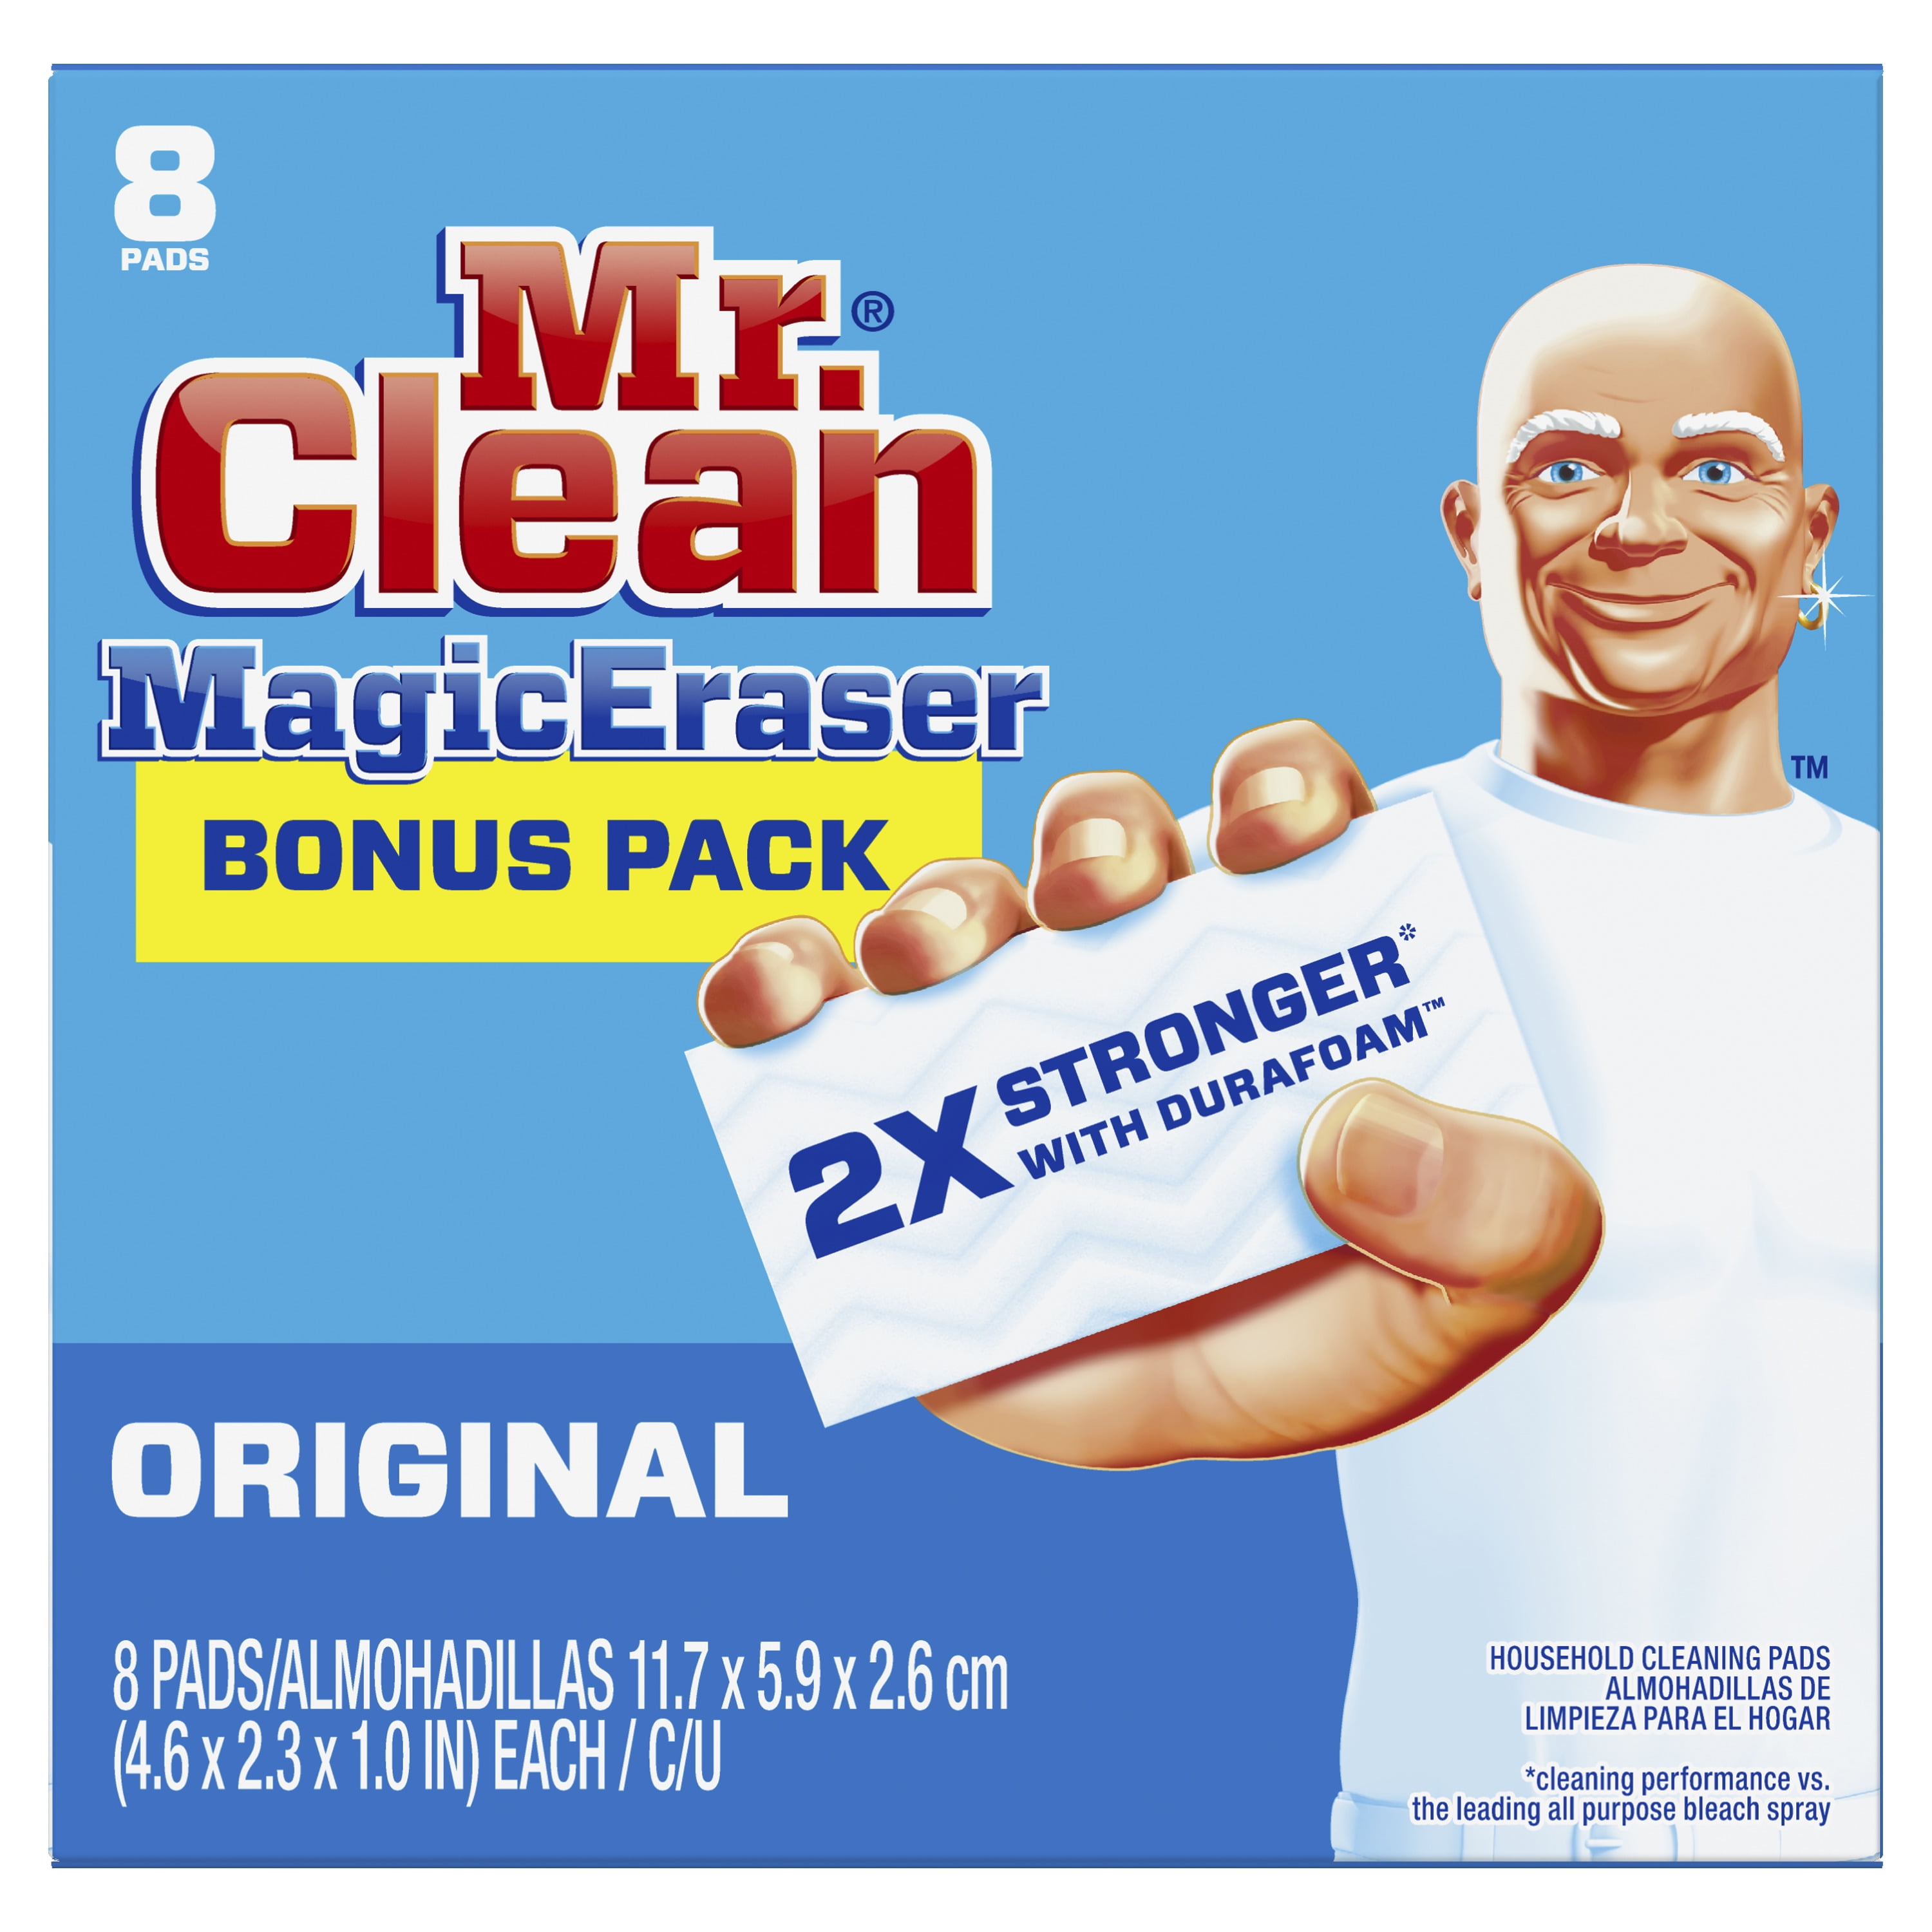 Sử dụng gạch tẩy vết bẩn Mr Clean Magic Eraser để làm sạch tất cả các vết bẩn trên bề mặt. Với kết cấu đặc biệt, gạch tẩy này giúp bạn dễ dàng khử sạch các vết bẩn khó chịu chỉ với một chút nước. Hãy sử dụng gạch tẩy vết bẩn Mr Clean Magic Eraser để đảm bảo sạch sẽ và không gây hại cho bề mặt của bạn.